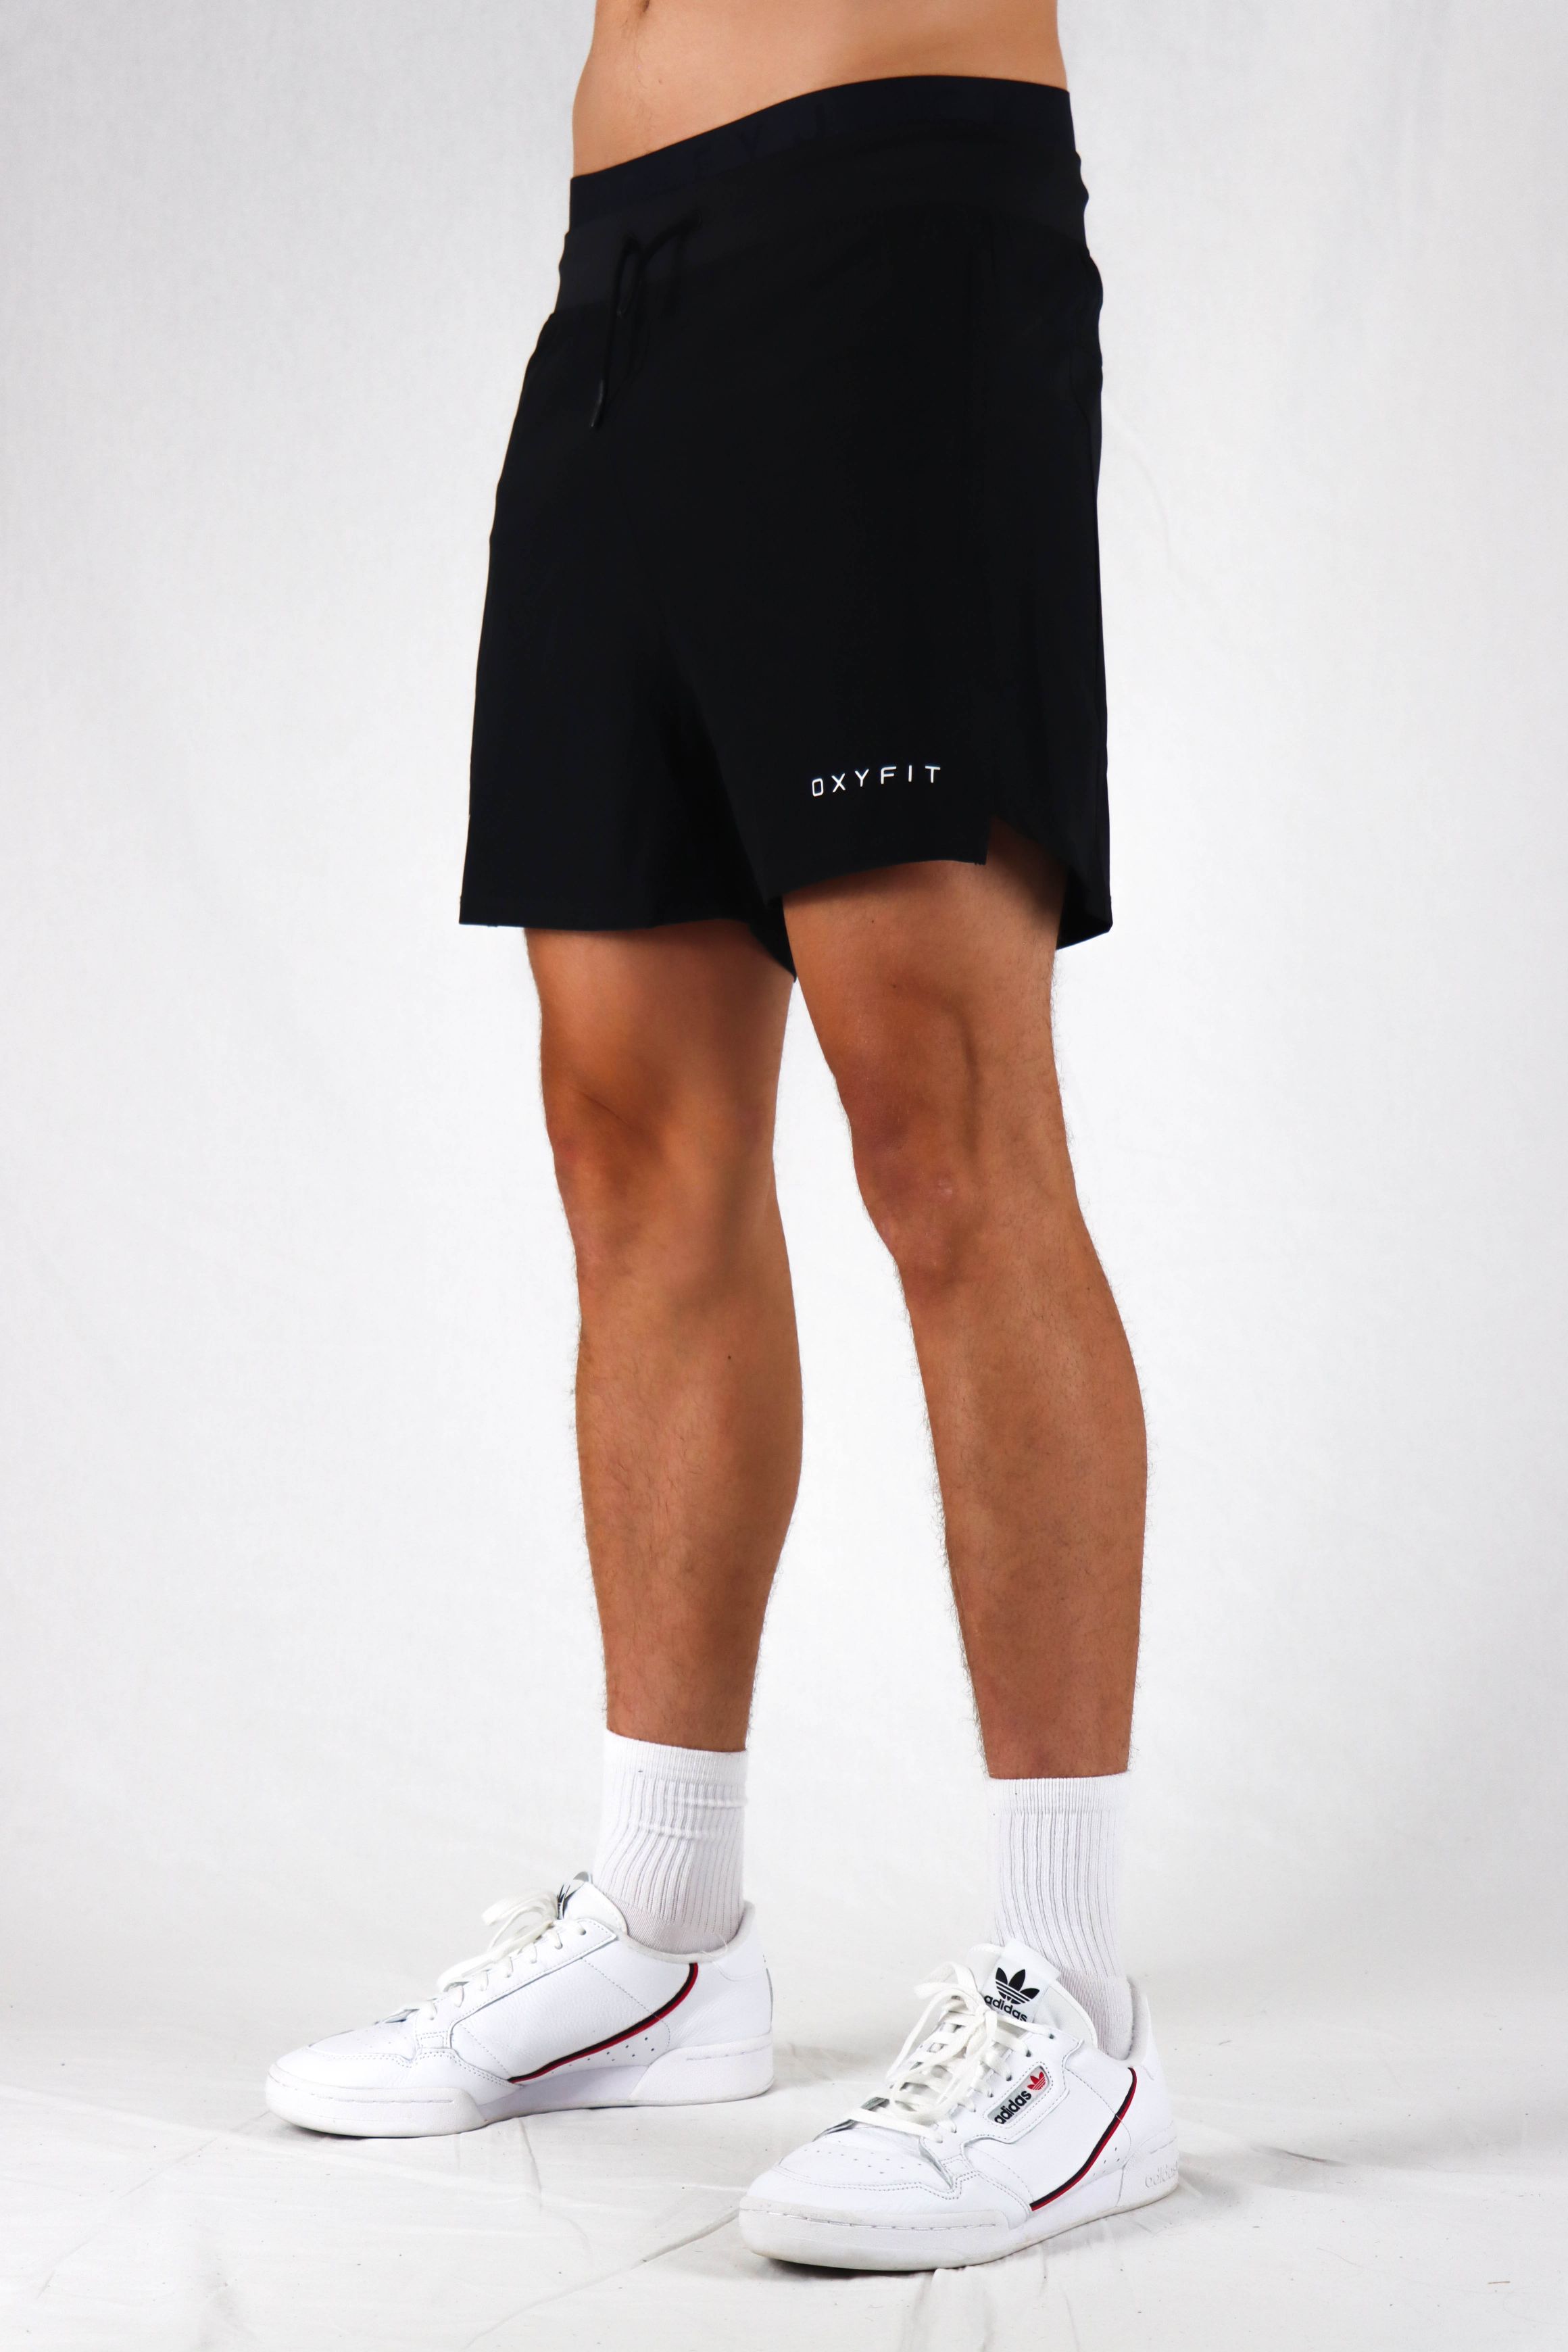 Oxyfit Mens Quad Shorts - True Black